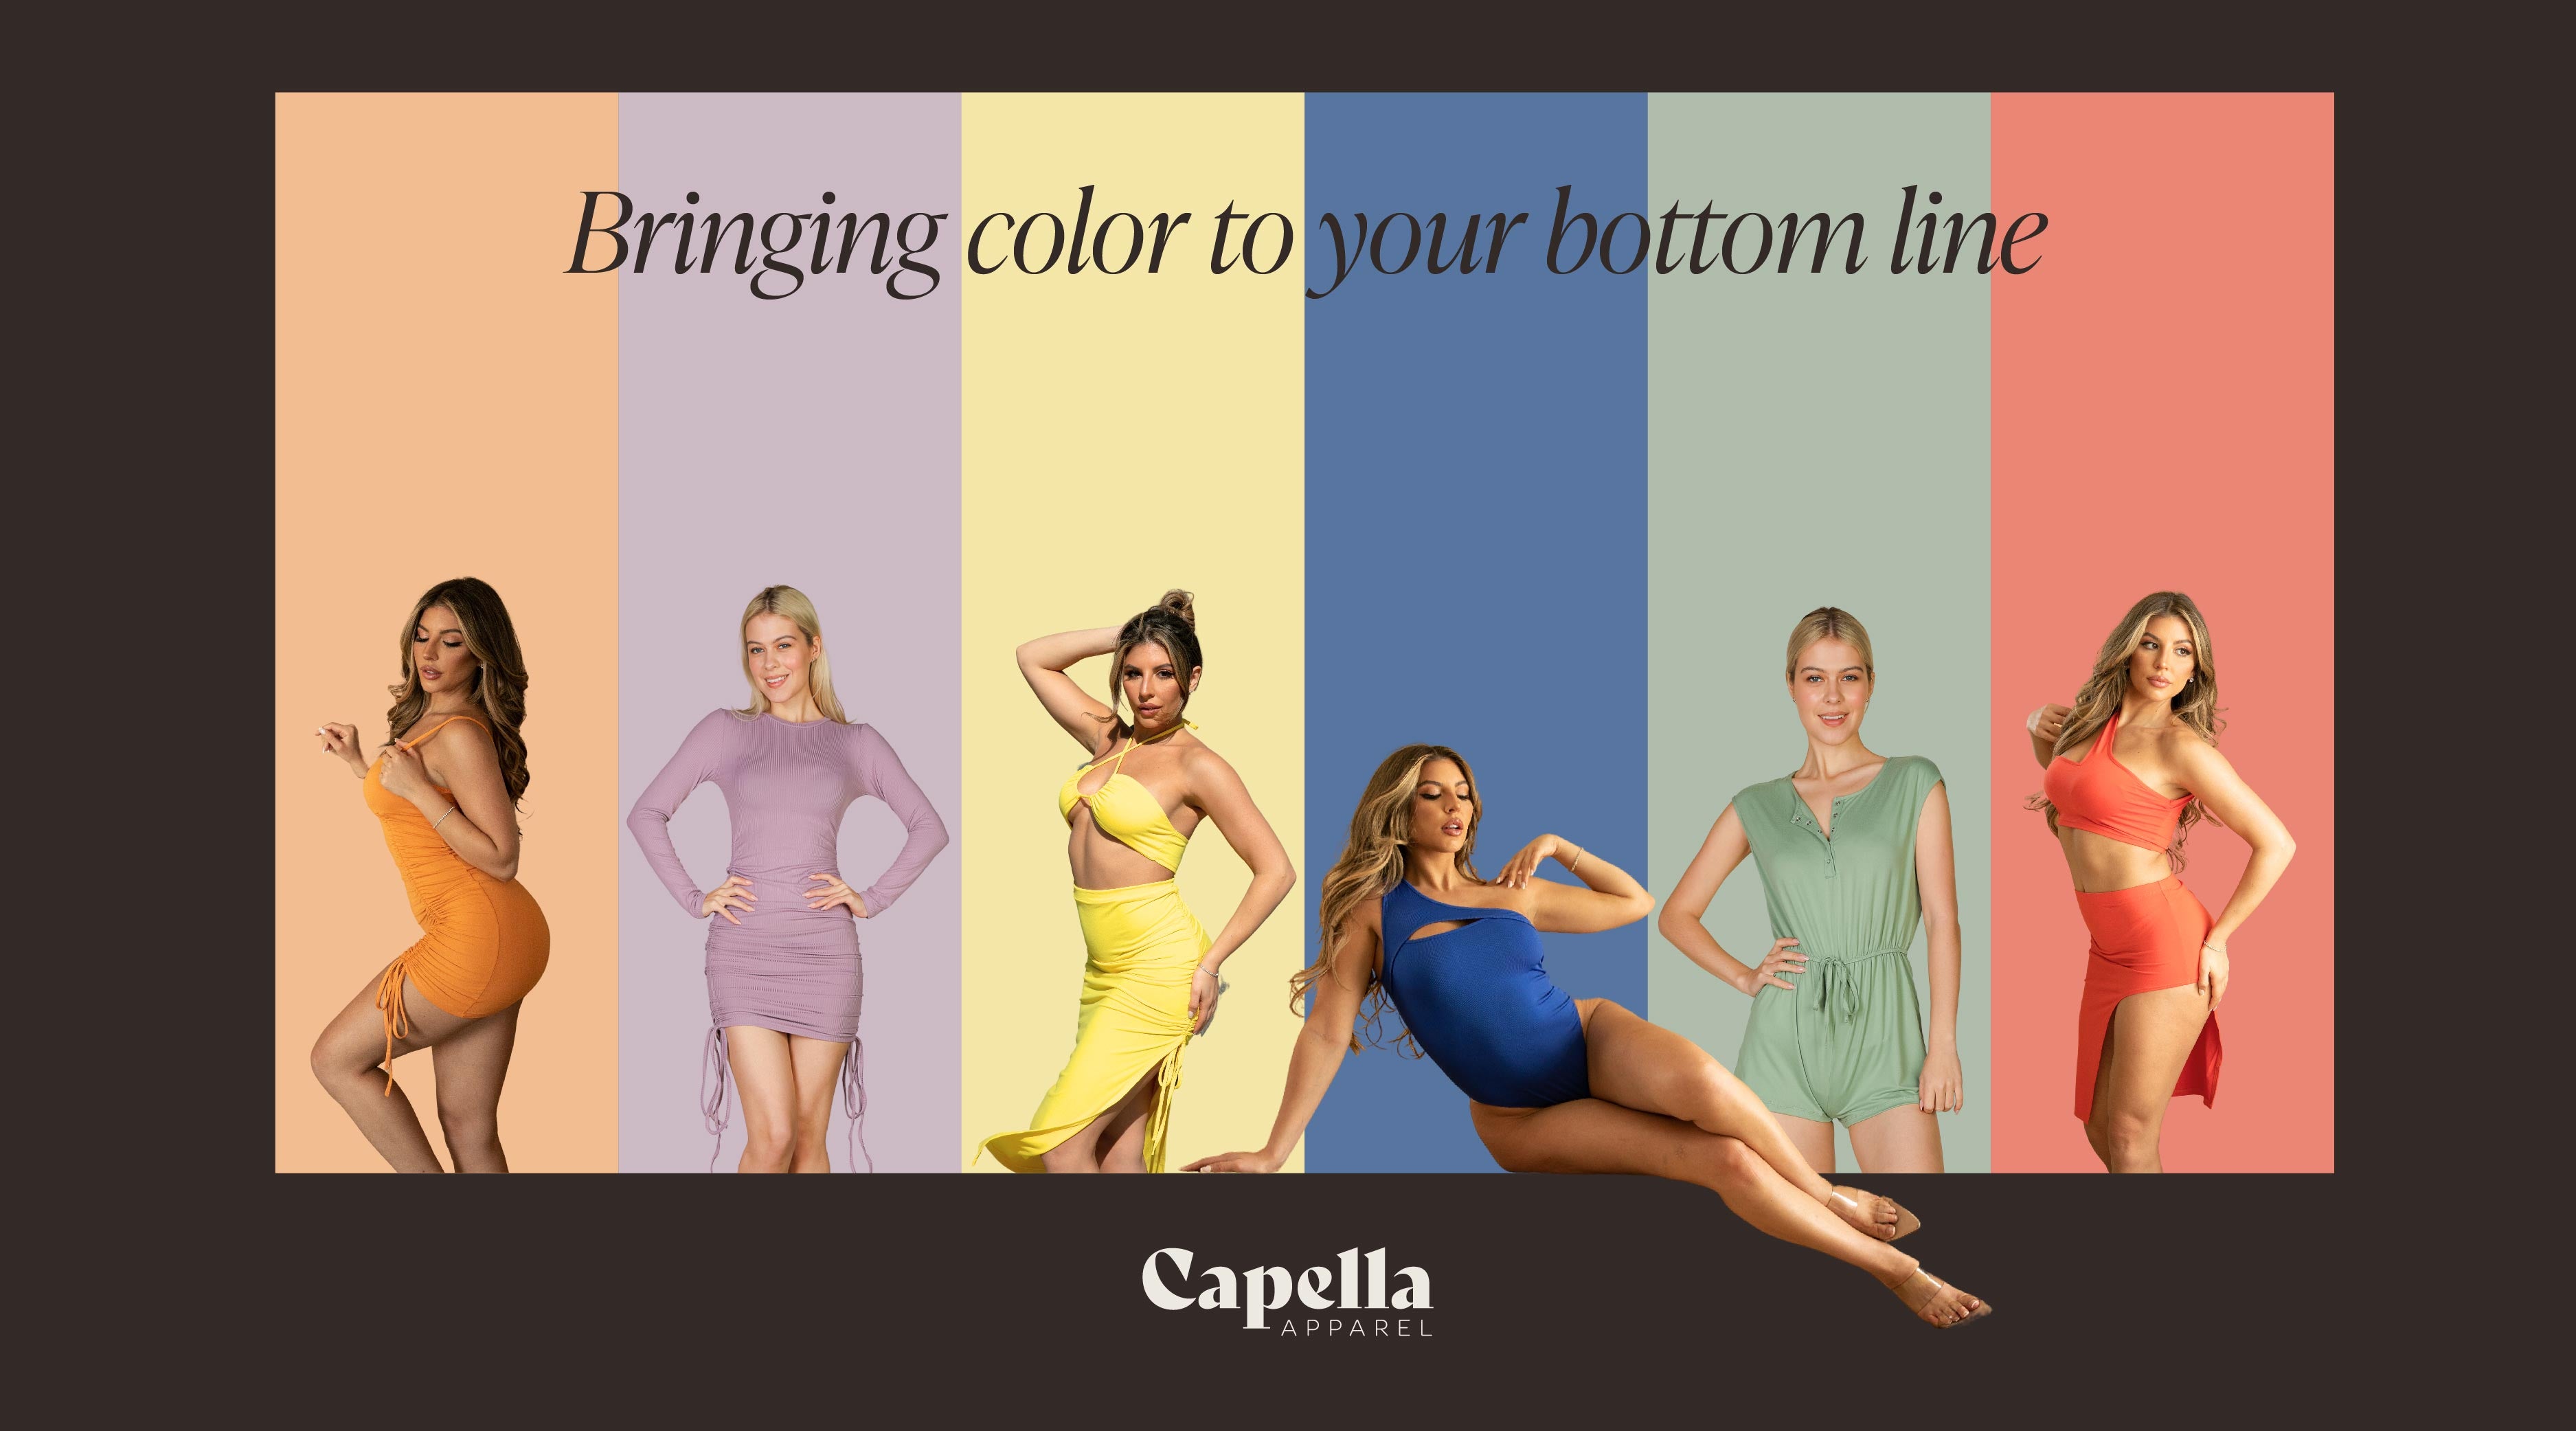 Capella Apparel Slogan Bringing color to your bottom line